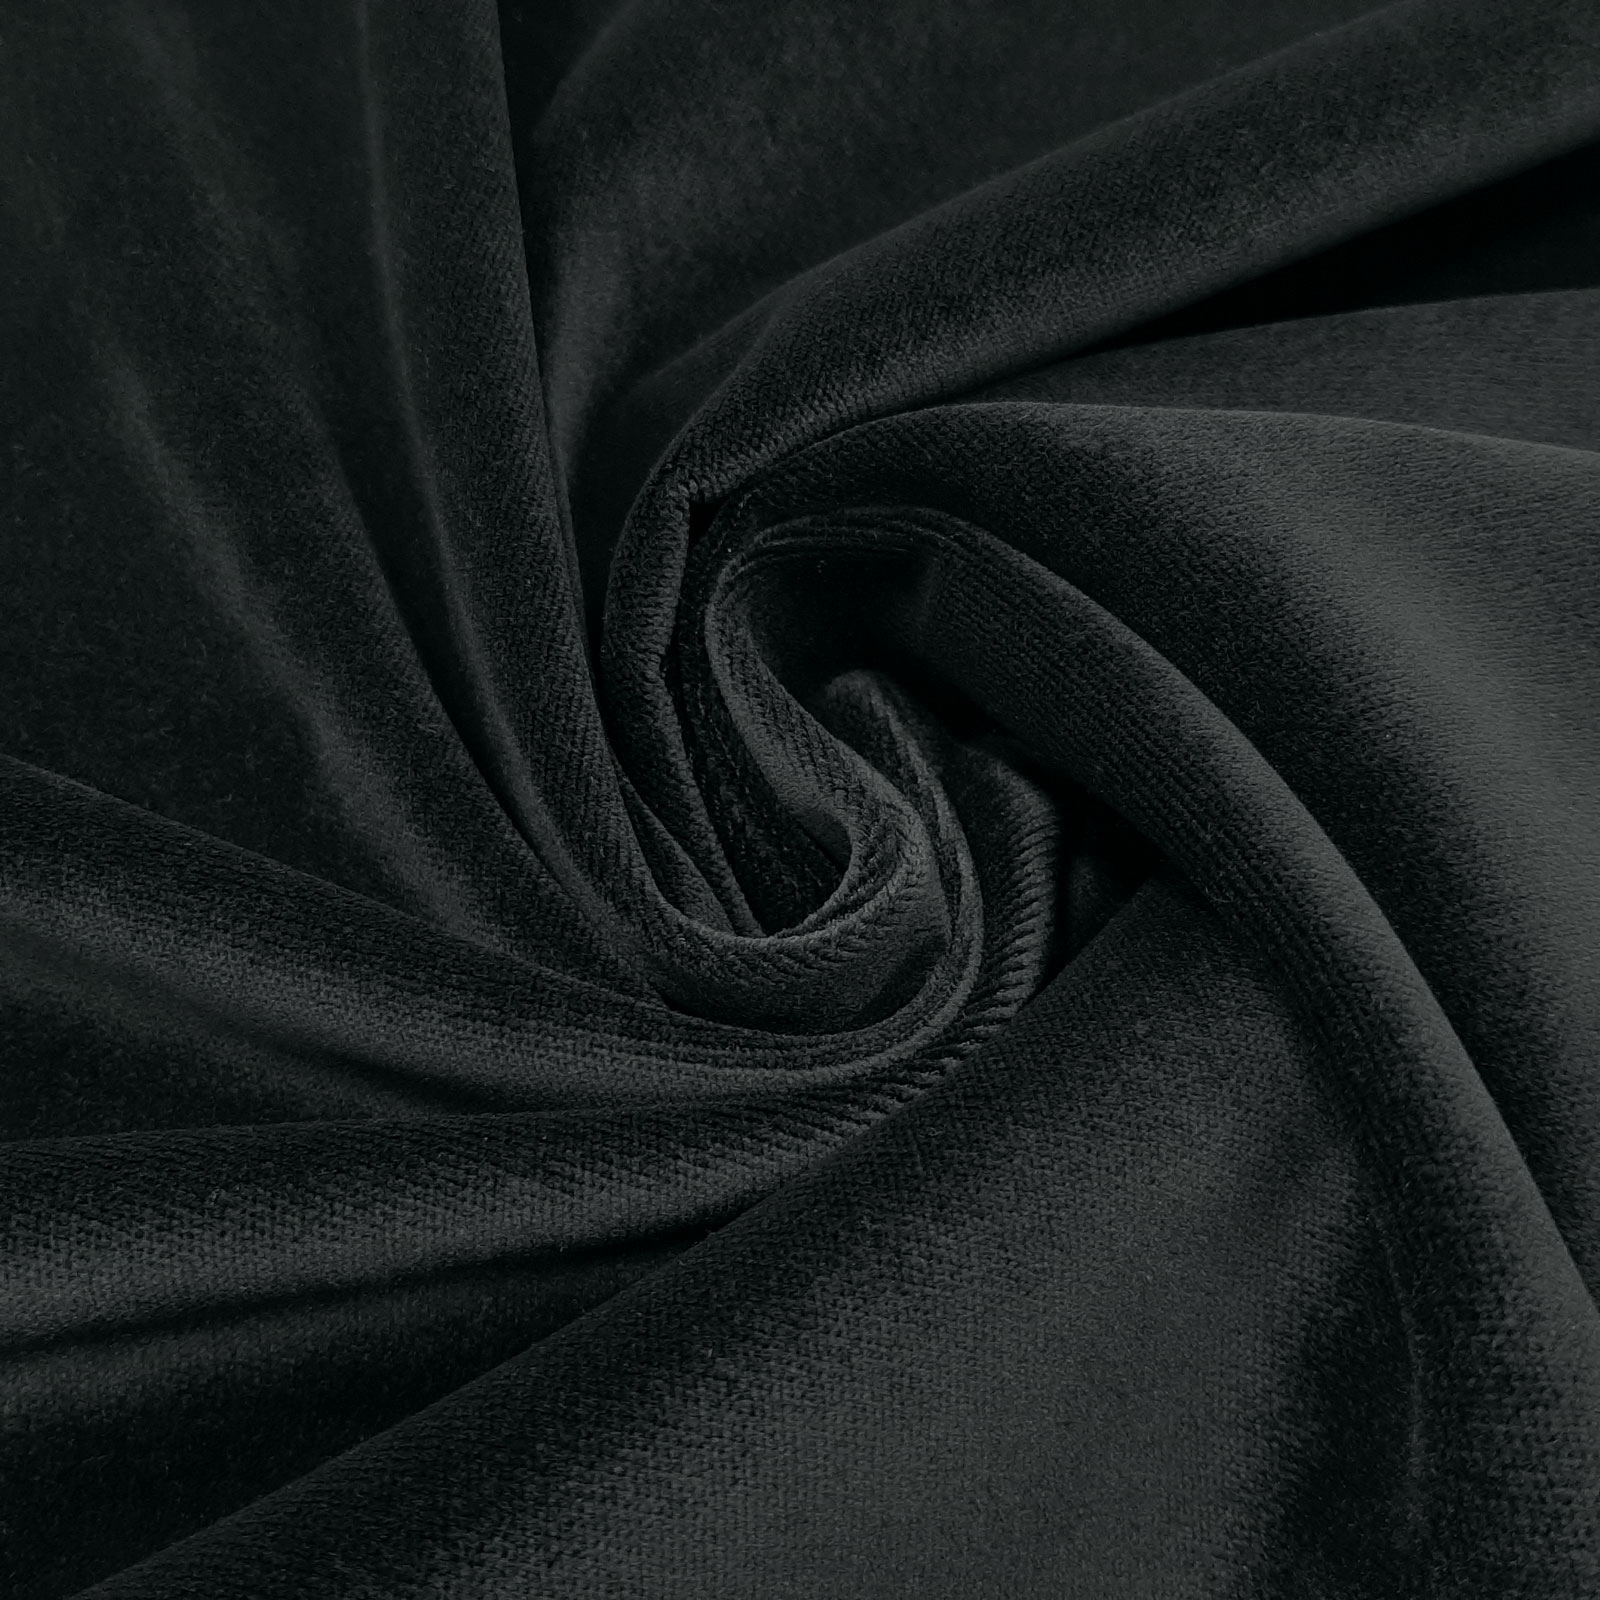 Exclusive Soft Velvet - dekorativ sammet, sammet för möbler och kläder - flamskyddad - JAB Anstoetz -Svart